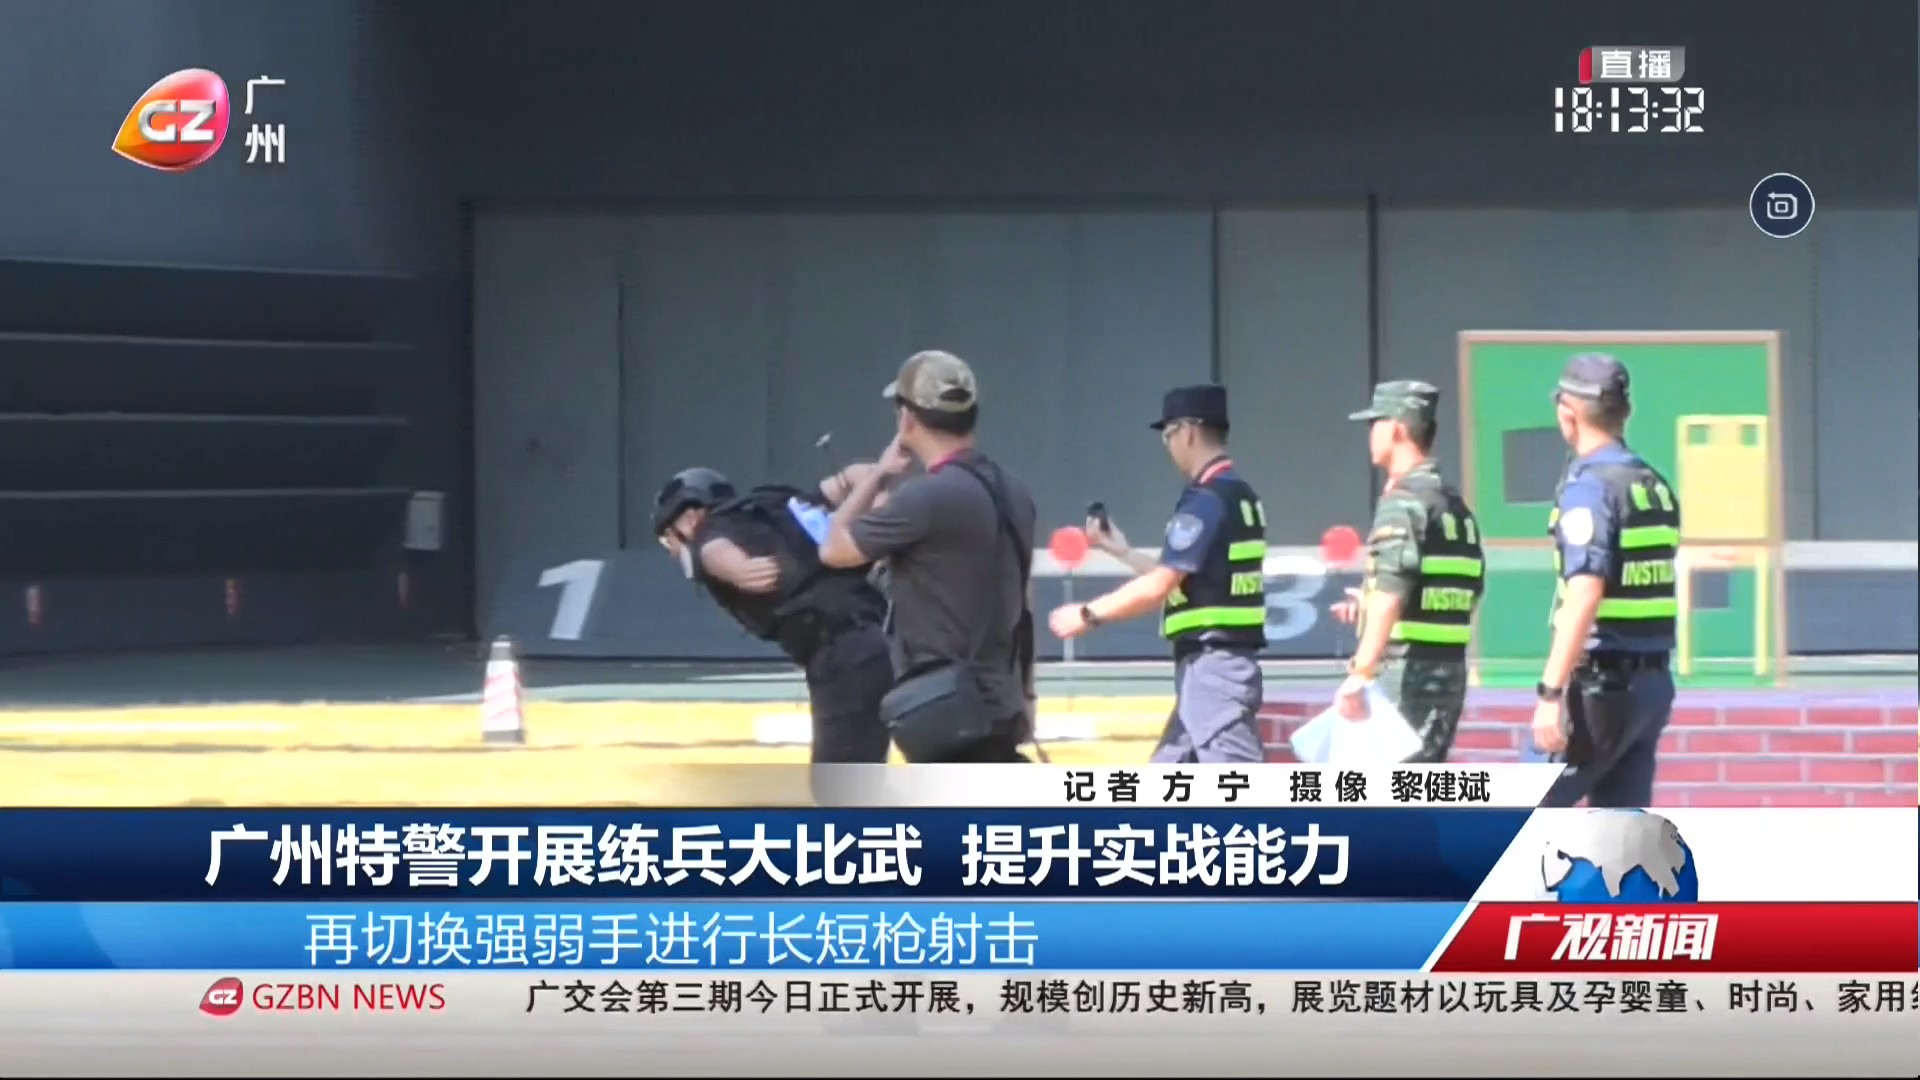 广州台综合频道 广视新闻 广州特警开展练兵大比武 提升实战能力